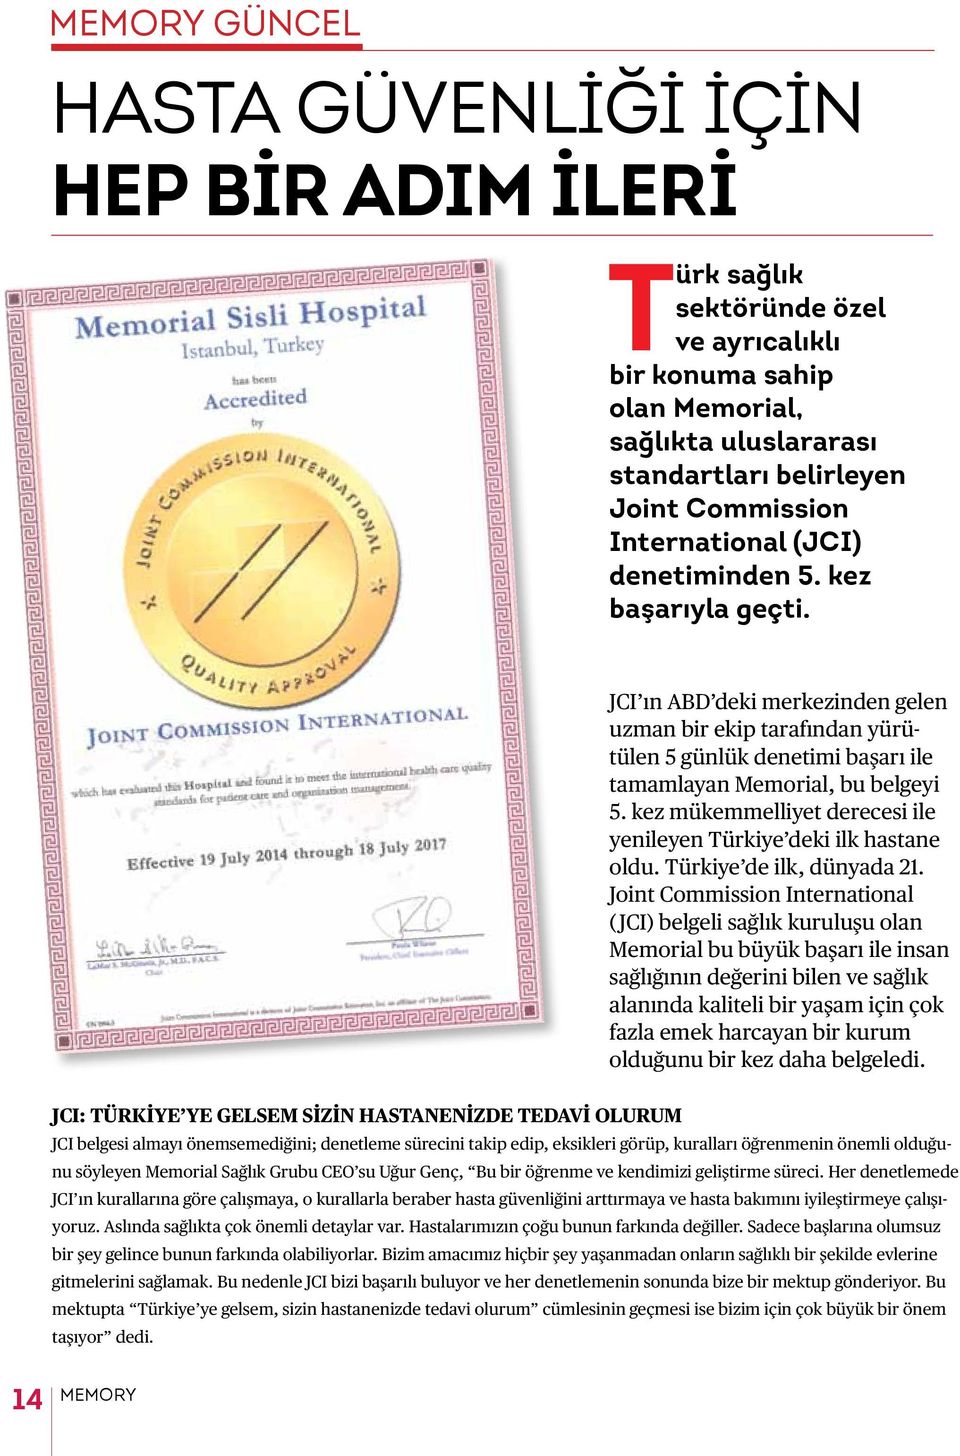 kez mükemmelliyet derecesi ile yenileyen Türkiye deki ilk hastane oldu. Türkiye de ilk, dünyada 21.